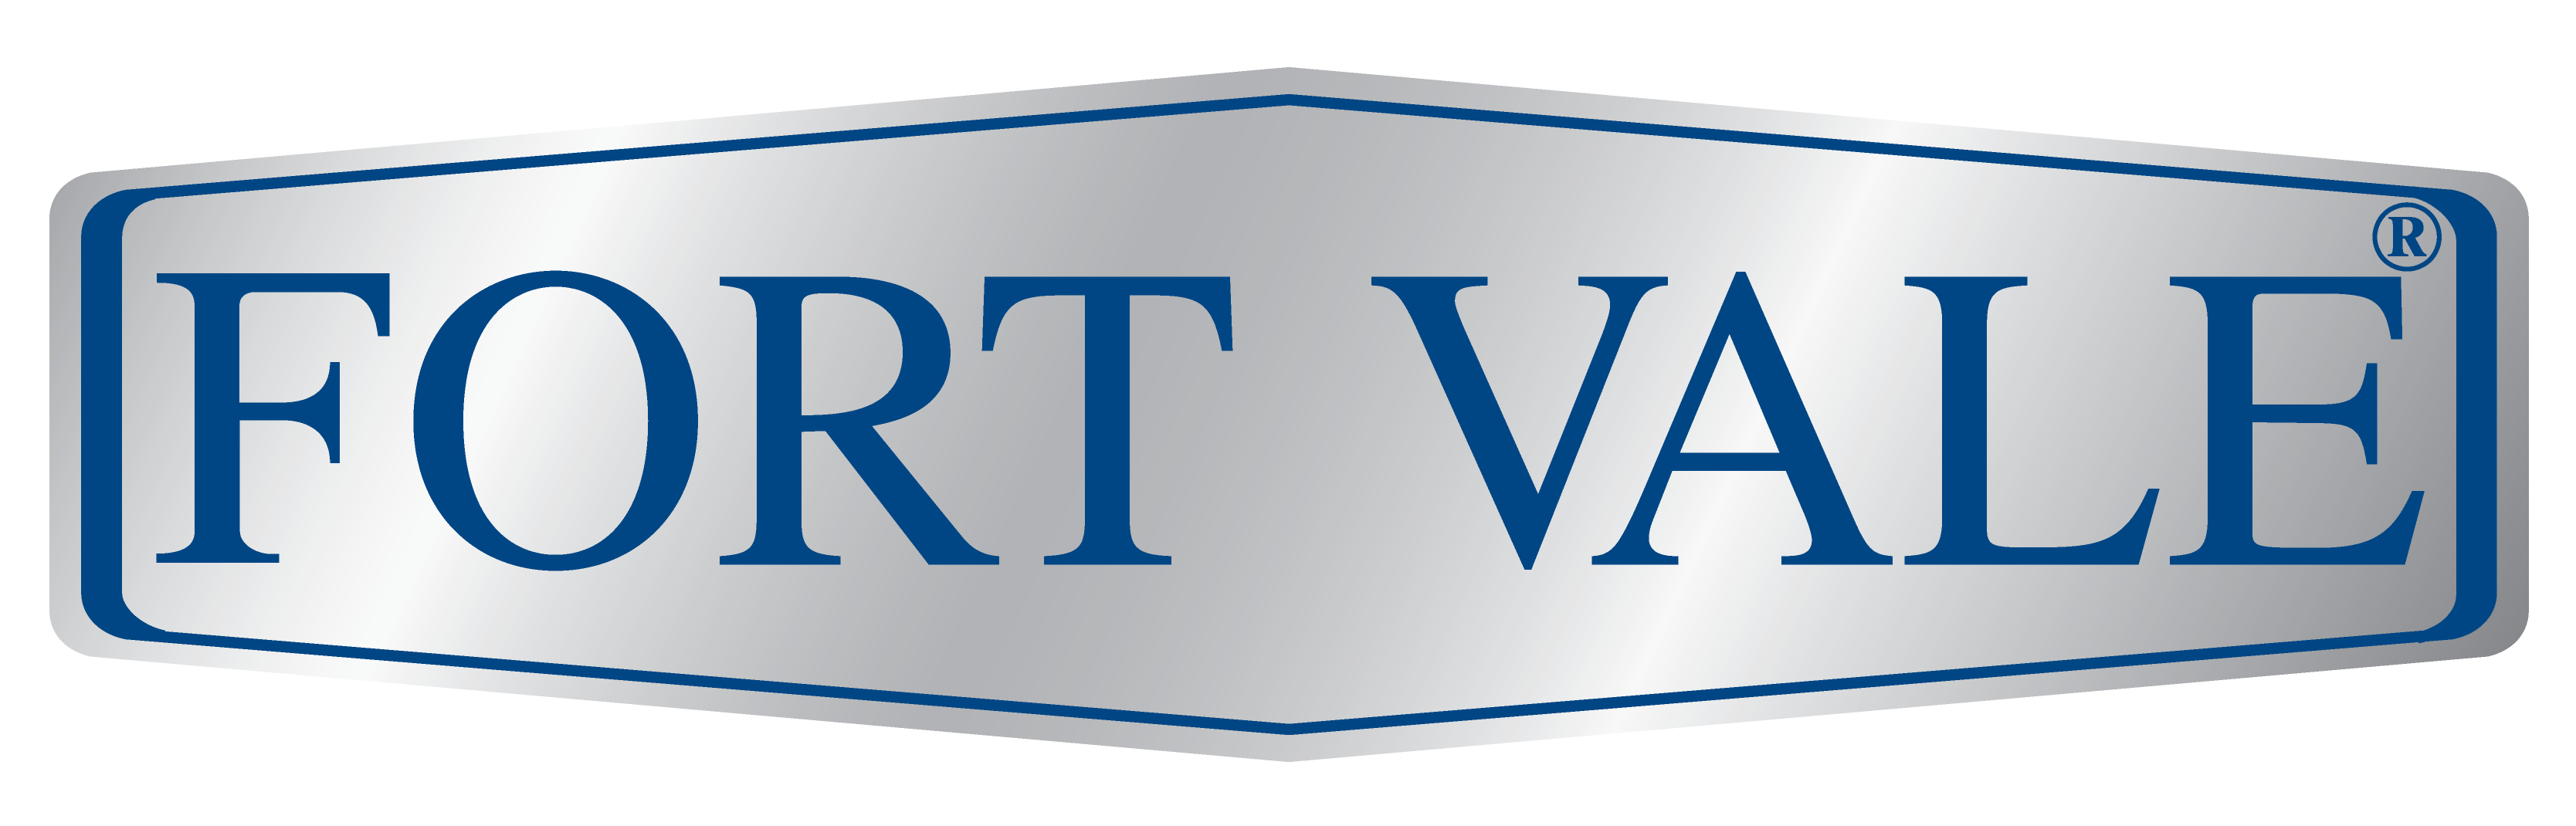 Fort Vale logo